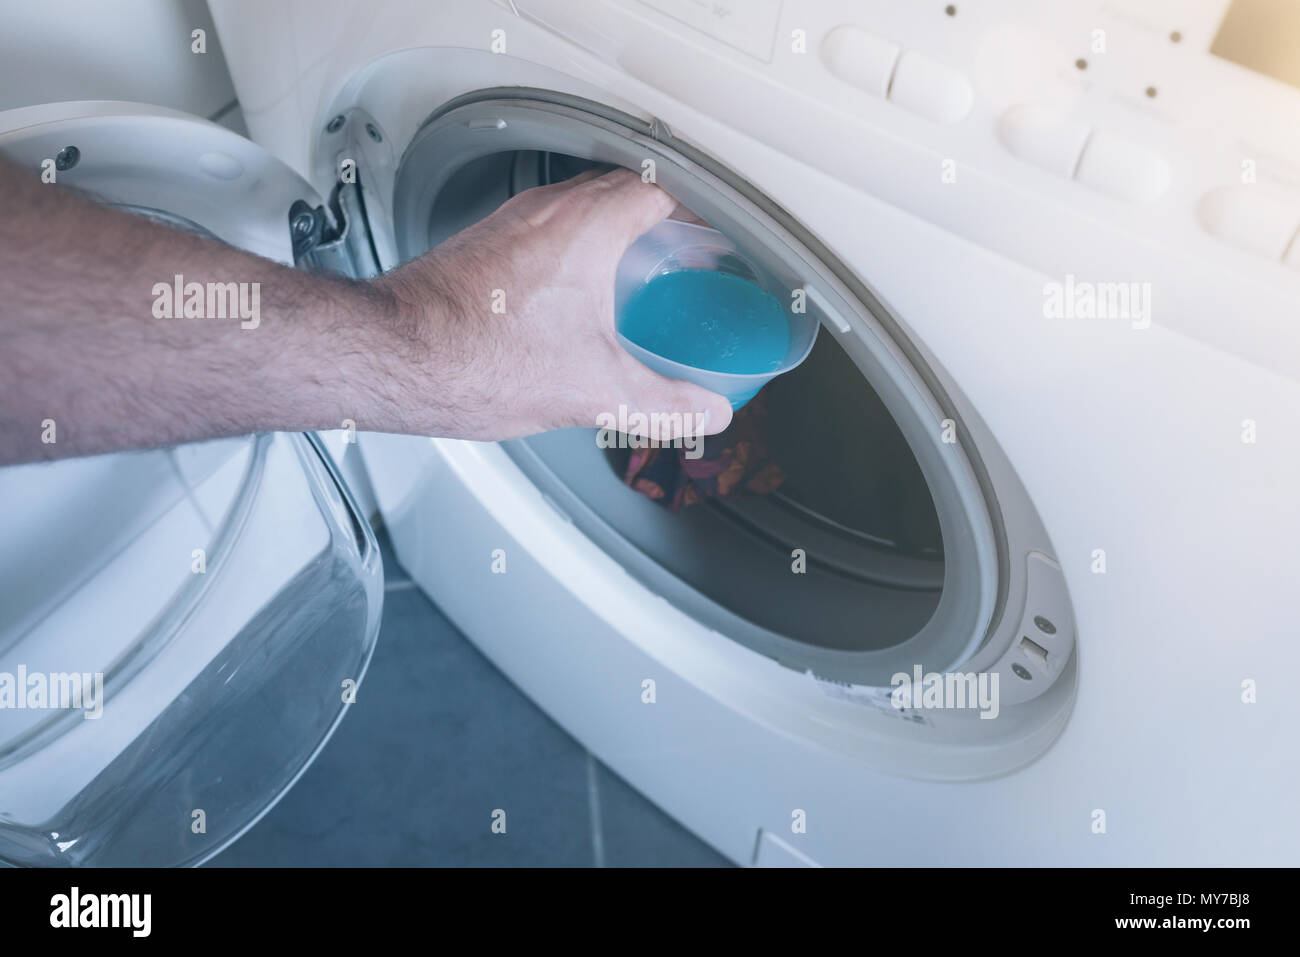 Mano colocando la tapa de medición con detergente en la lavadora Foto de stock